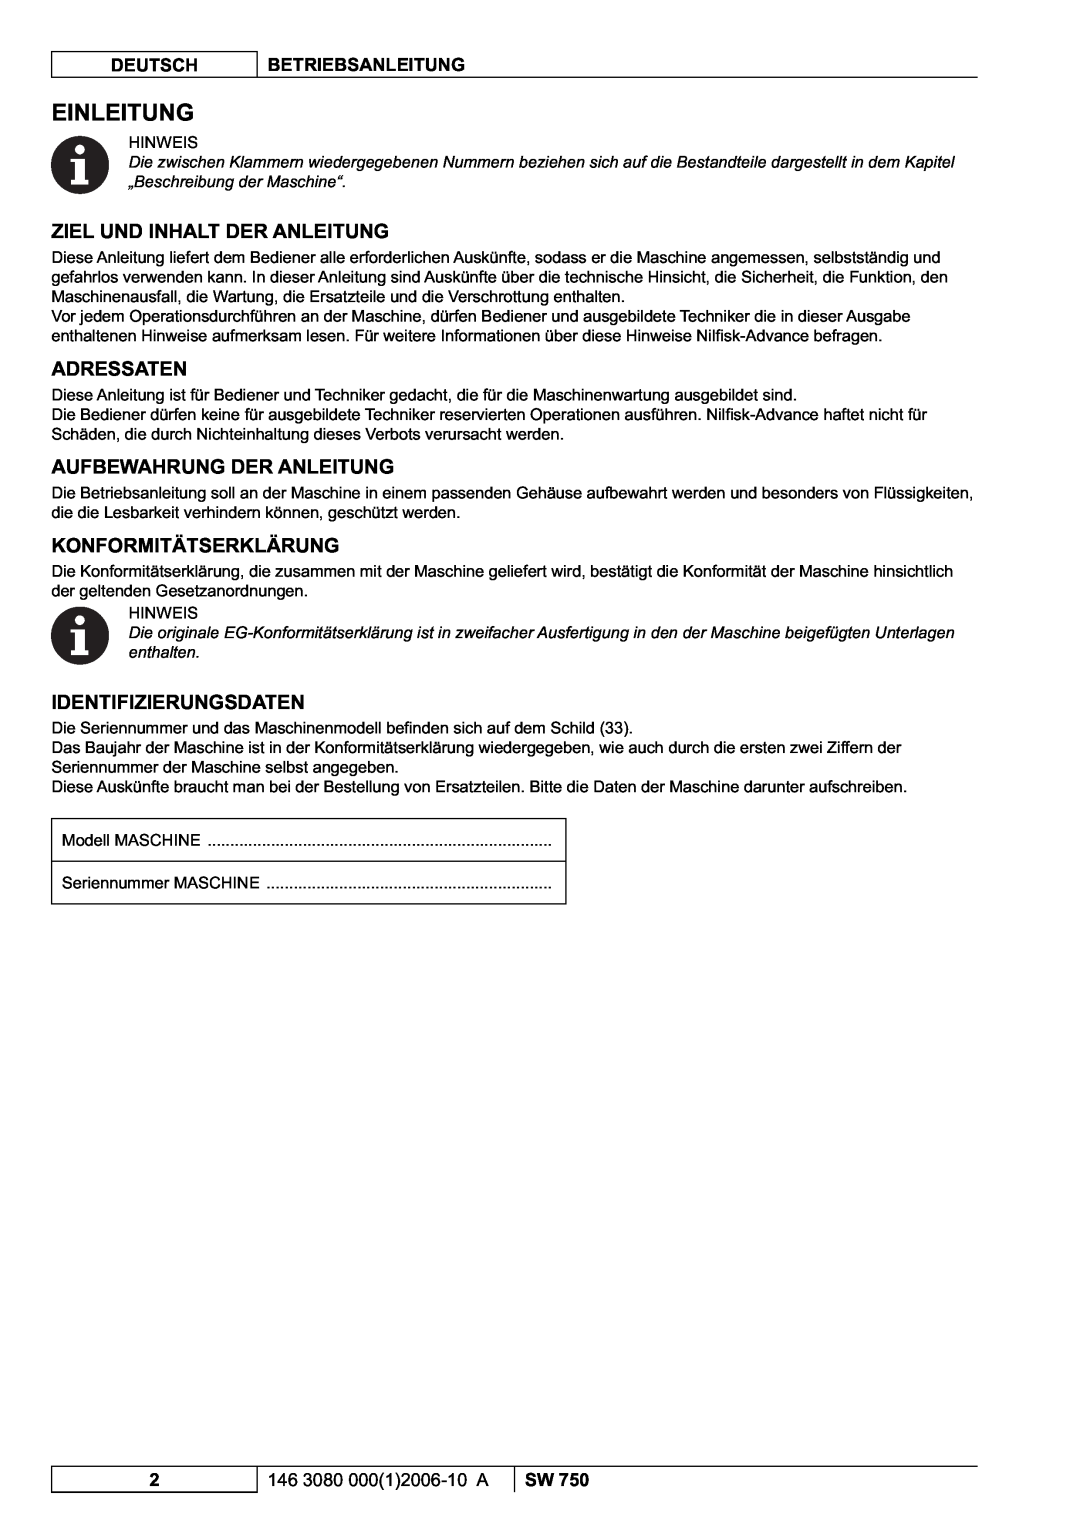 Nilfisk-ALTO SW 750 manuel dutilisation Einleitung, Ziel Und Inhalt Der Anleitung, Adressaten, Aufbewahrung Der Anleitung 